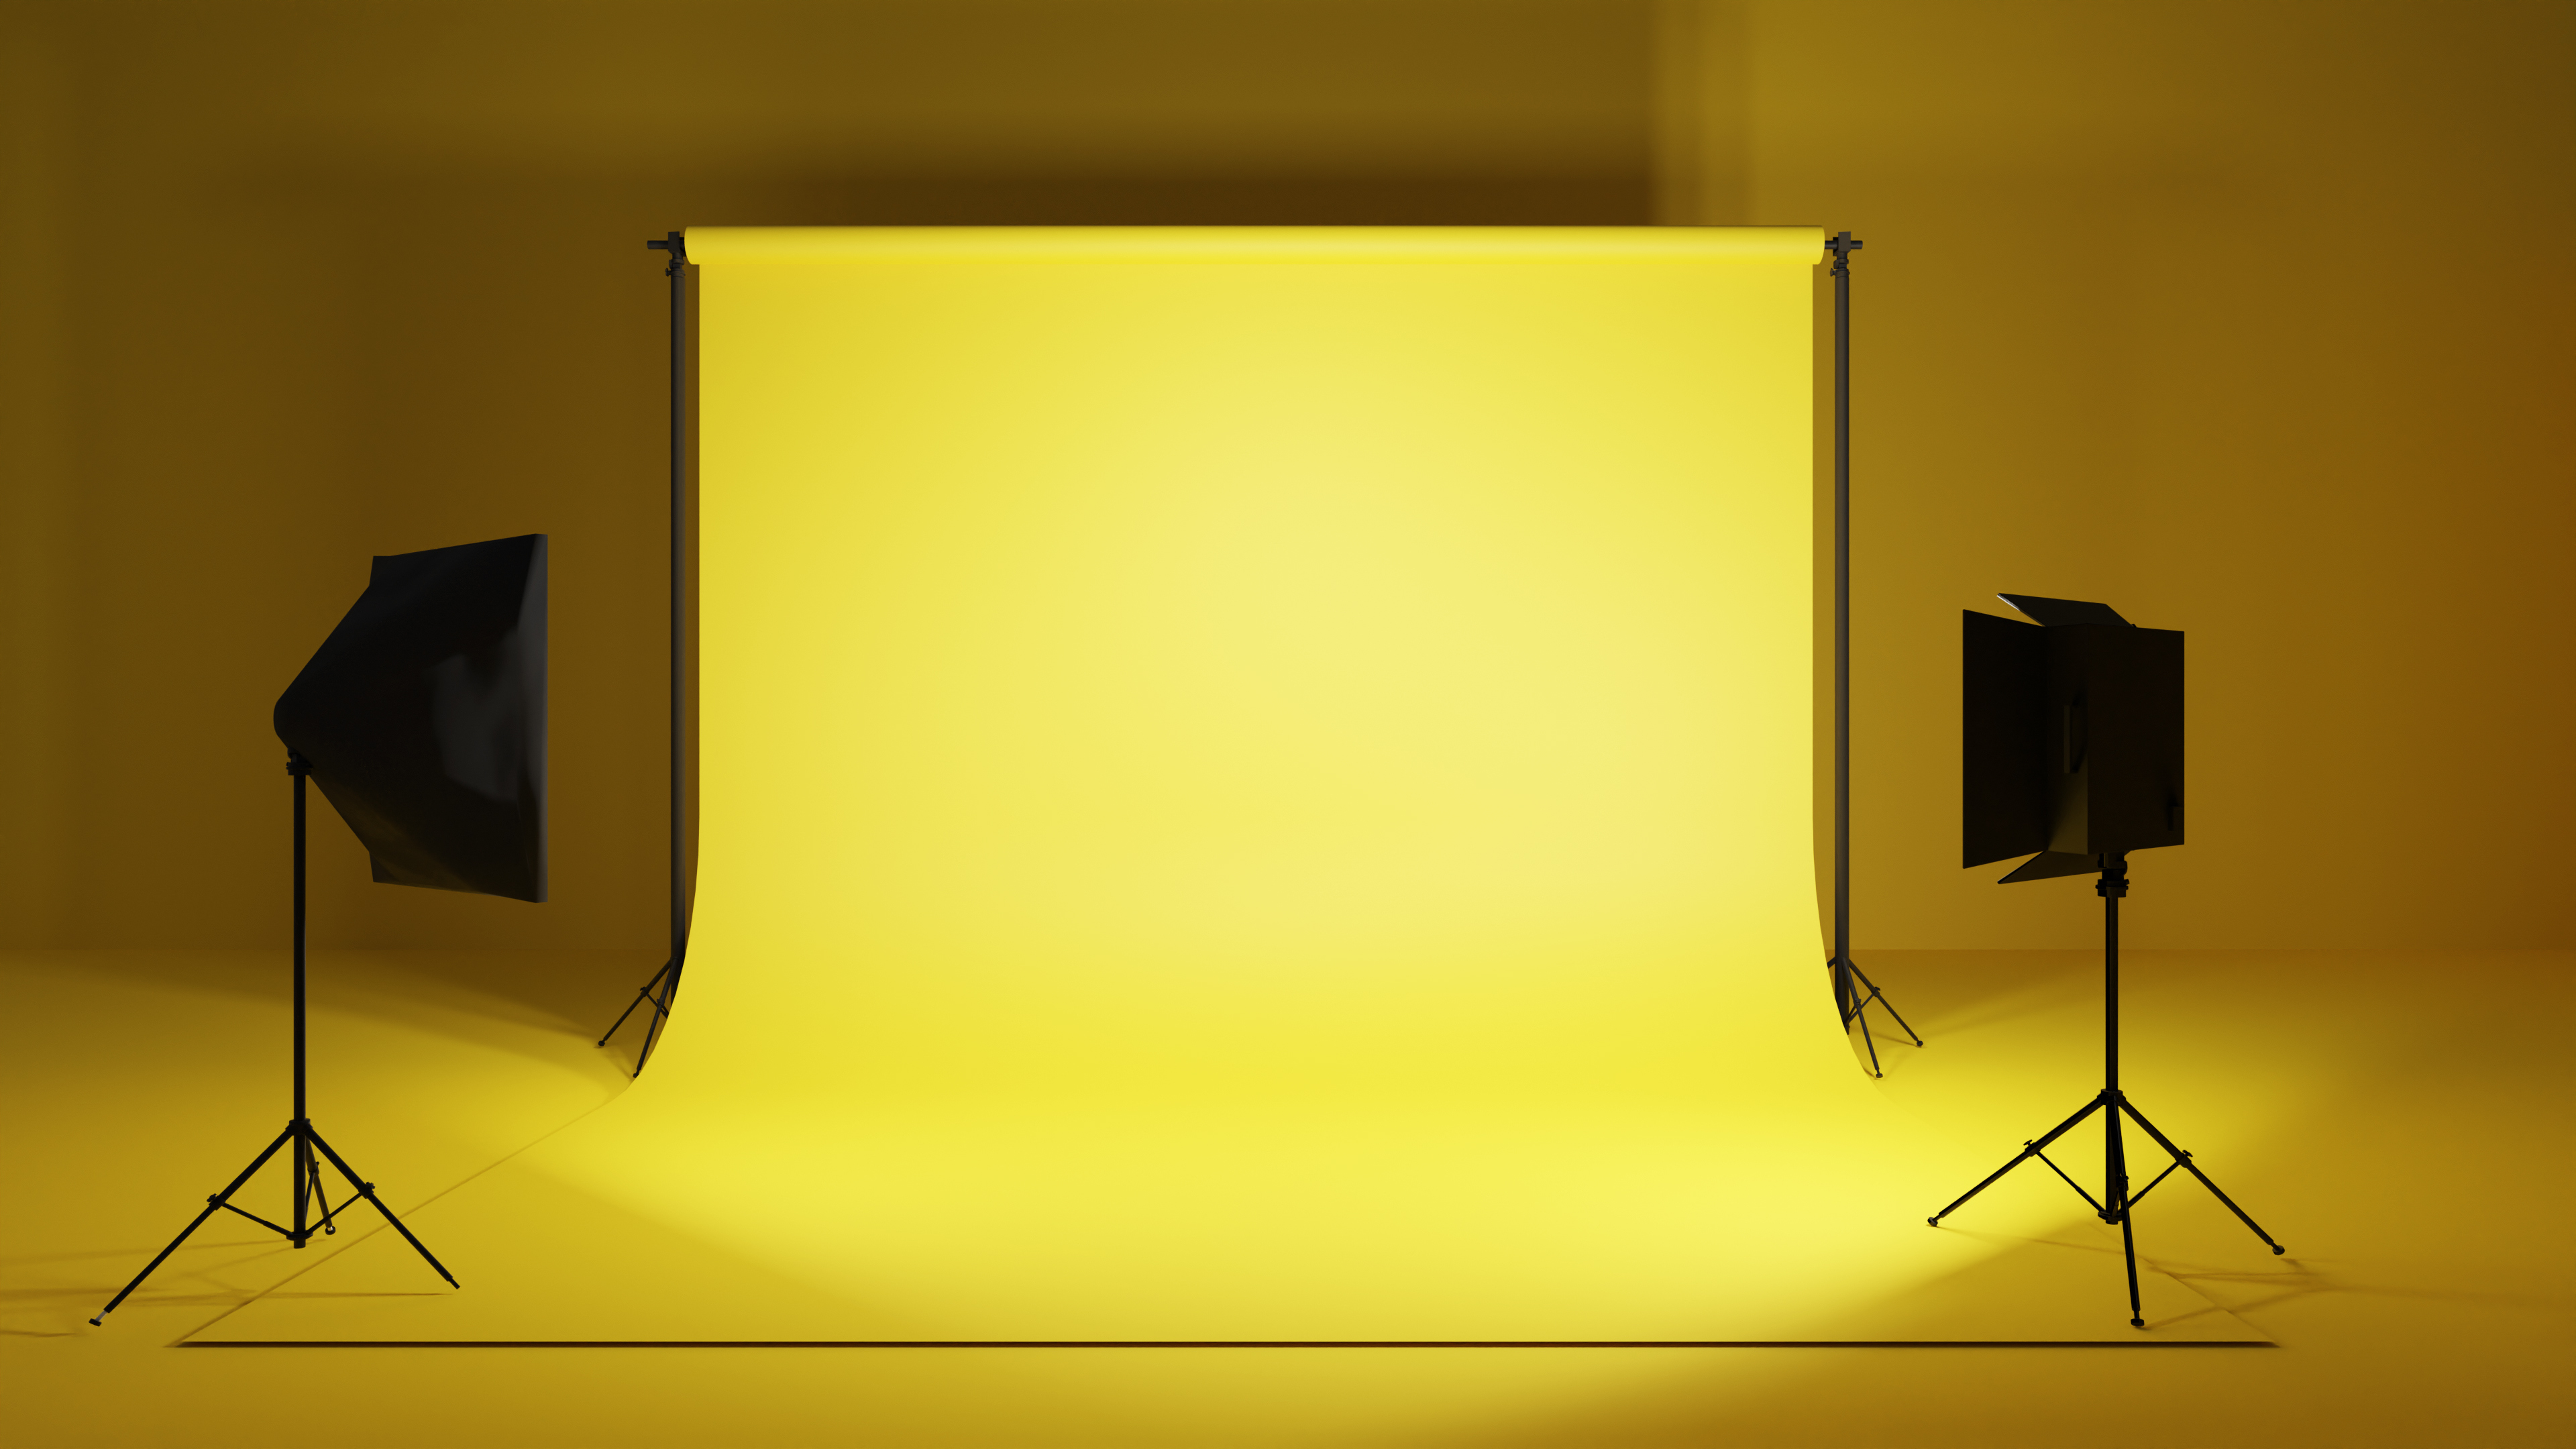 lighting equipment yellow background